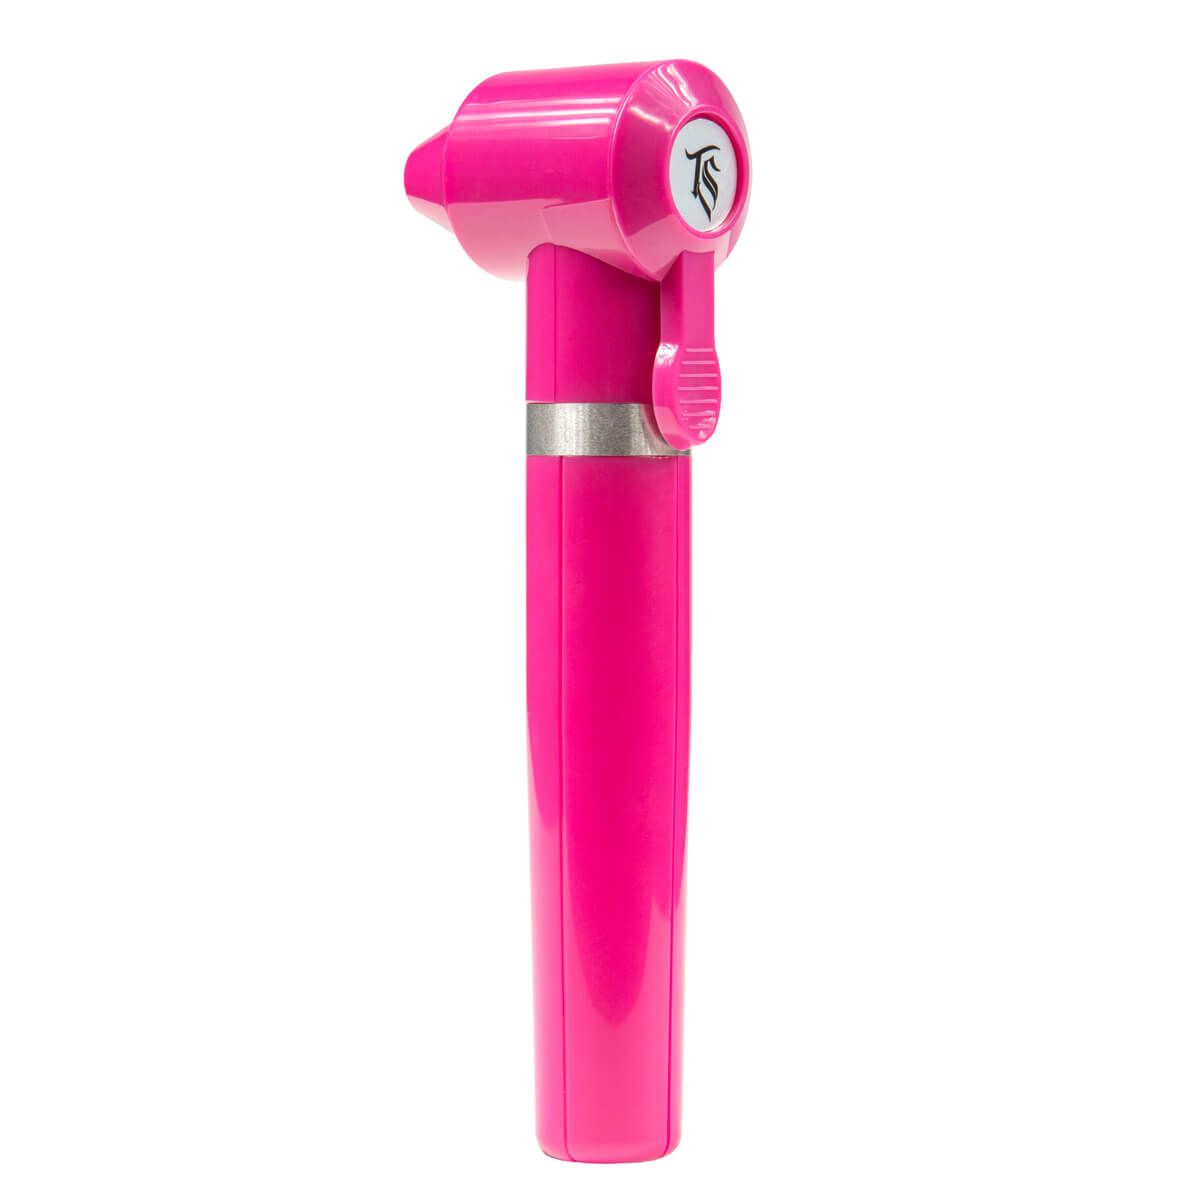 TATSoul - Ink Mixer Batterie - Pink